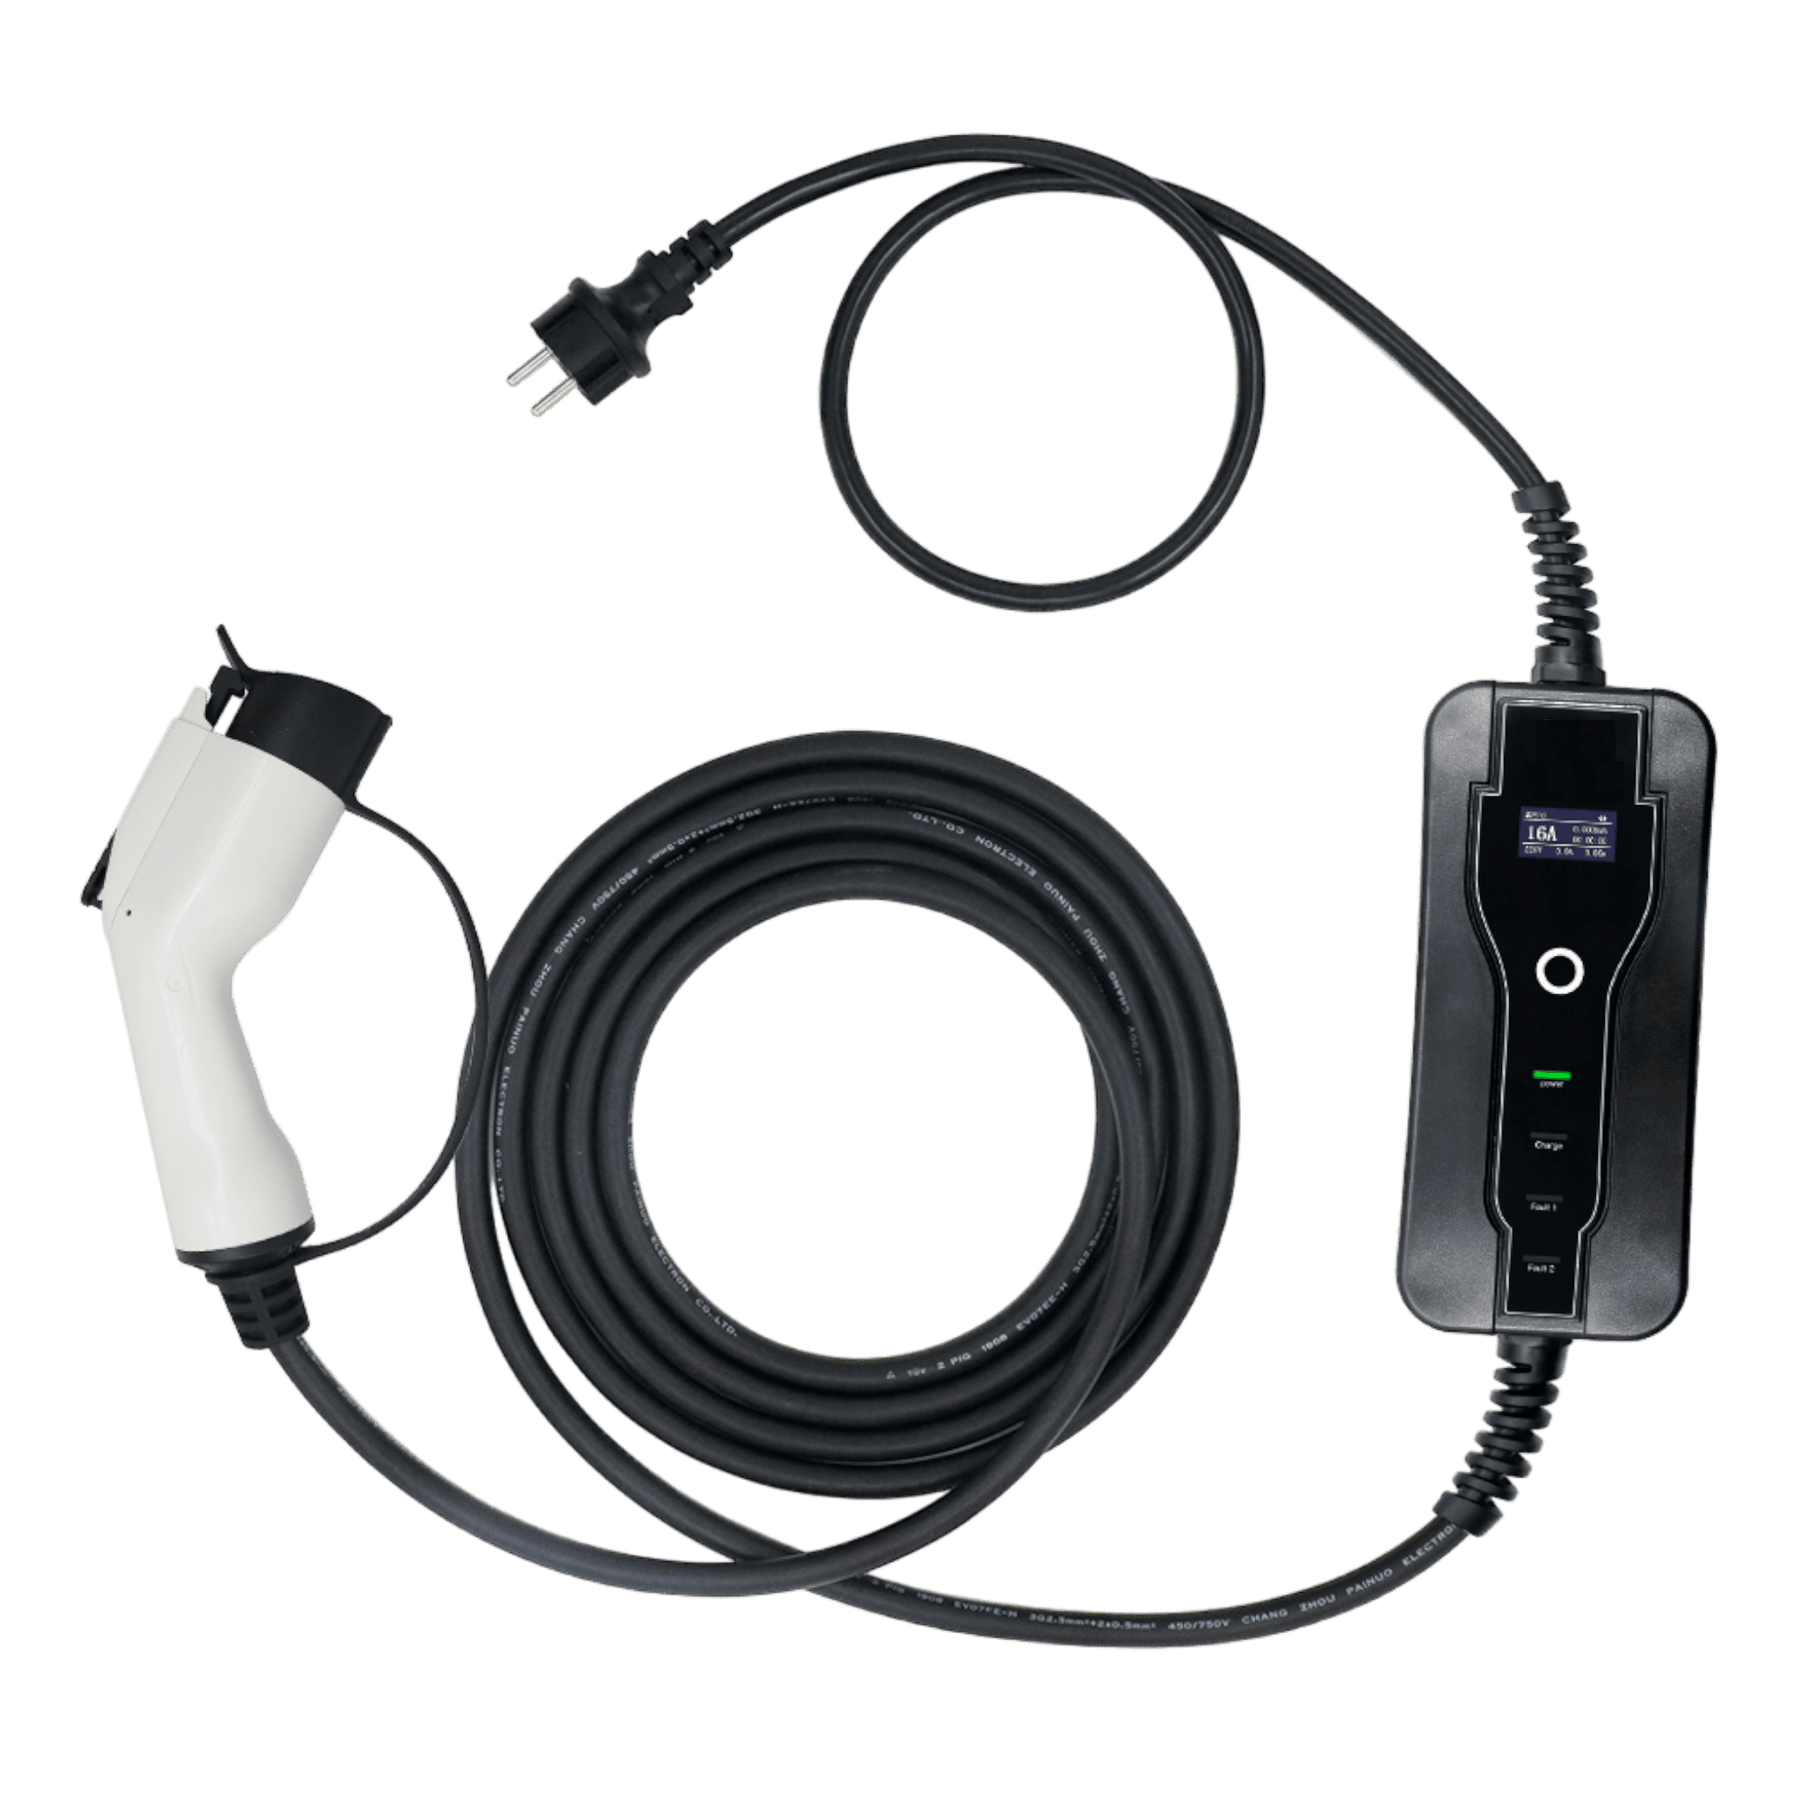 Cablu incarcare auto electric type 2, 3,6kw, monofazic